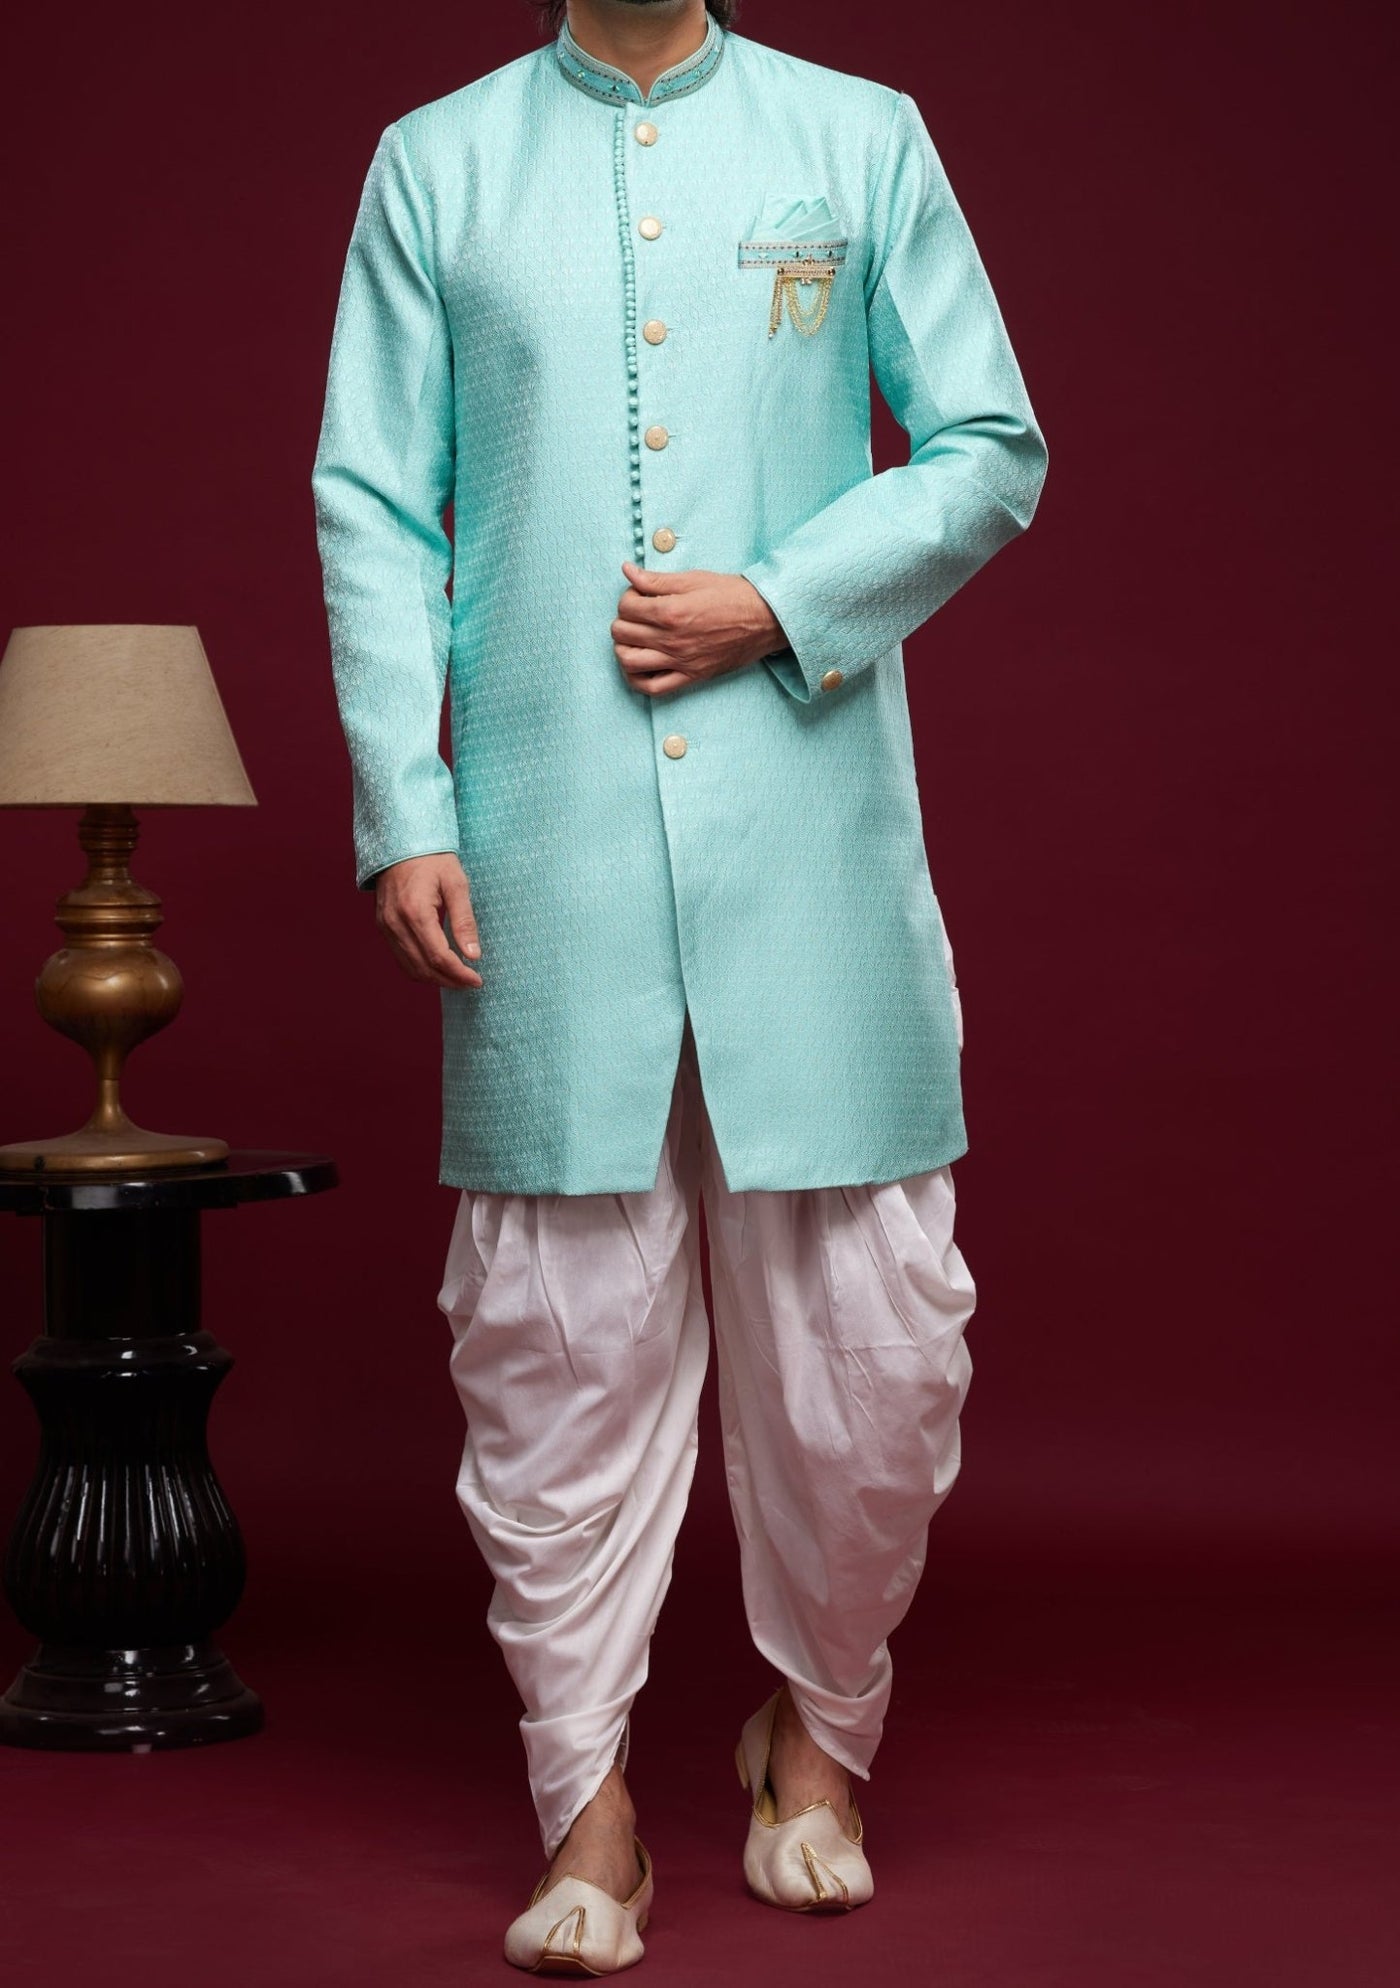 Men's Semi Indo Western Party Wear Sherwani Suit - db23840